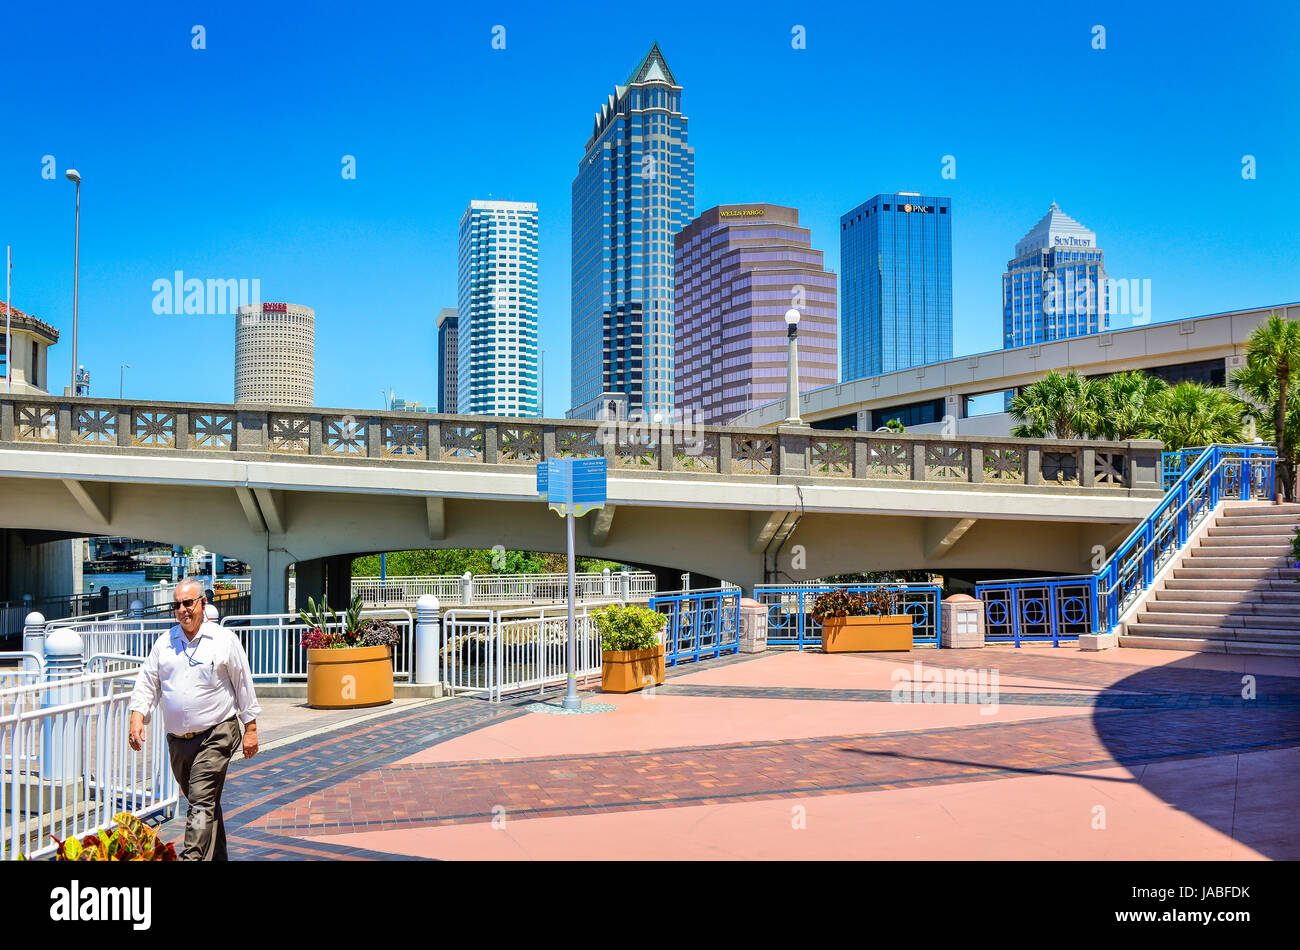 Impresionante paisaje urbano de edificios de oficinas moderno visto desde el Centro de Convenciones de Tampa con vistas al Puente Platt en el centro de Tampa, FL. Foto de stock